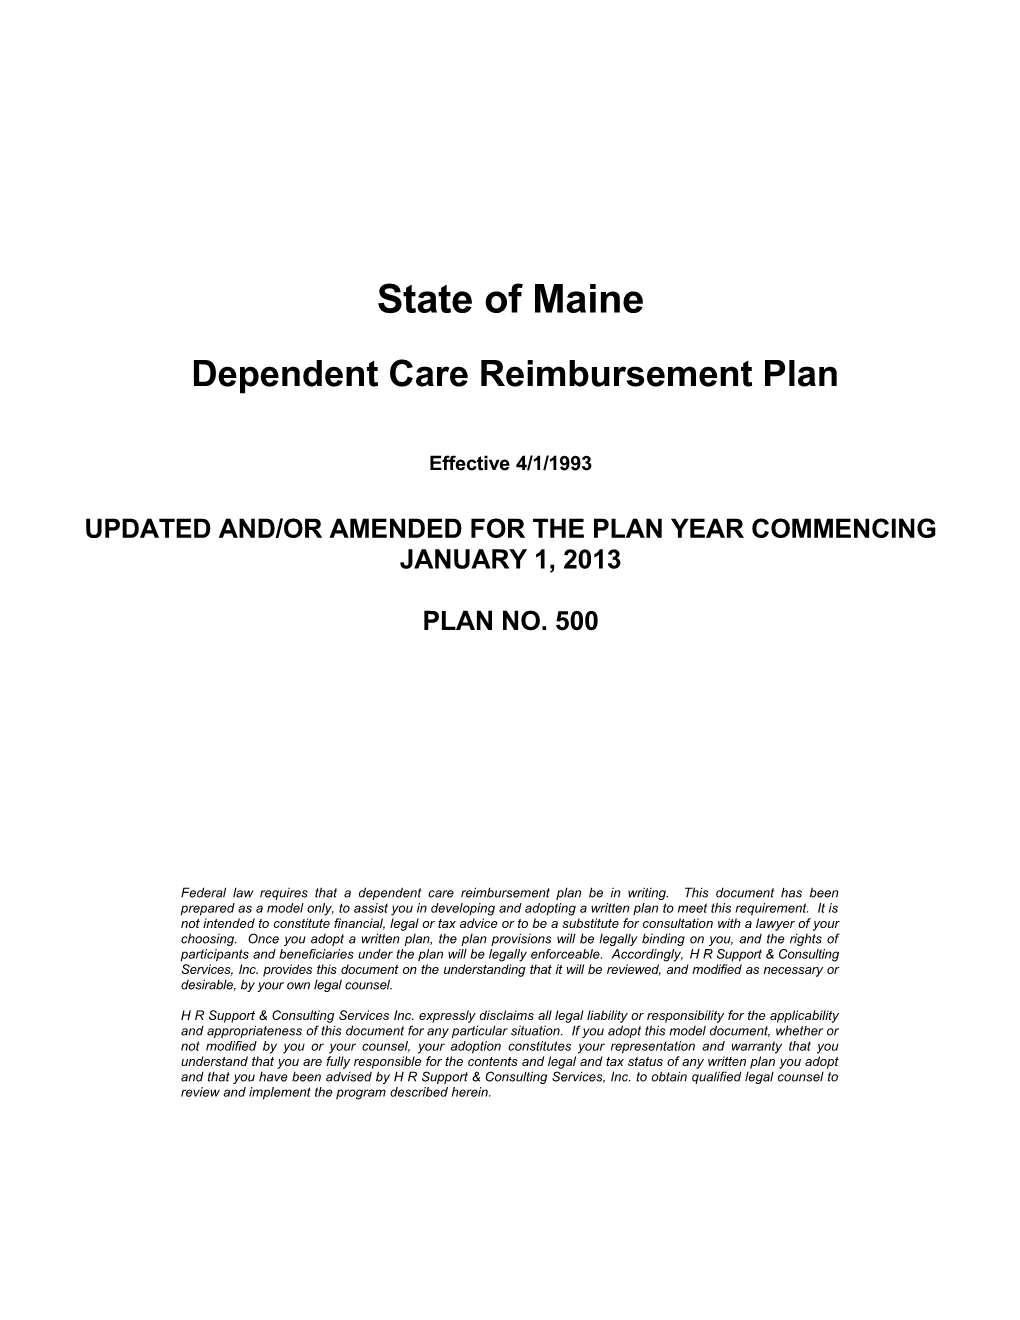 Dependent Care Reimbursement Plan